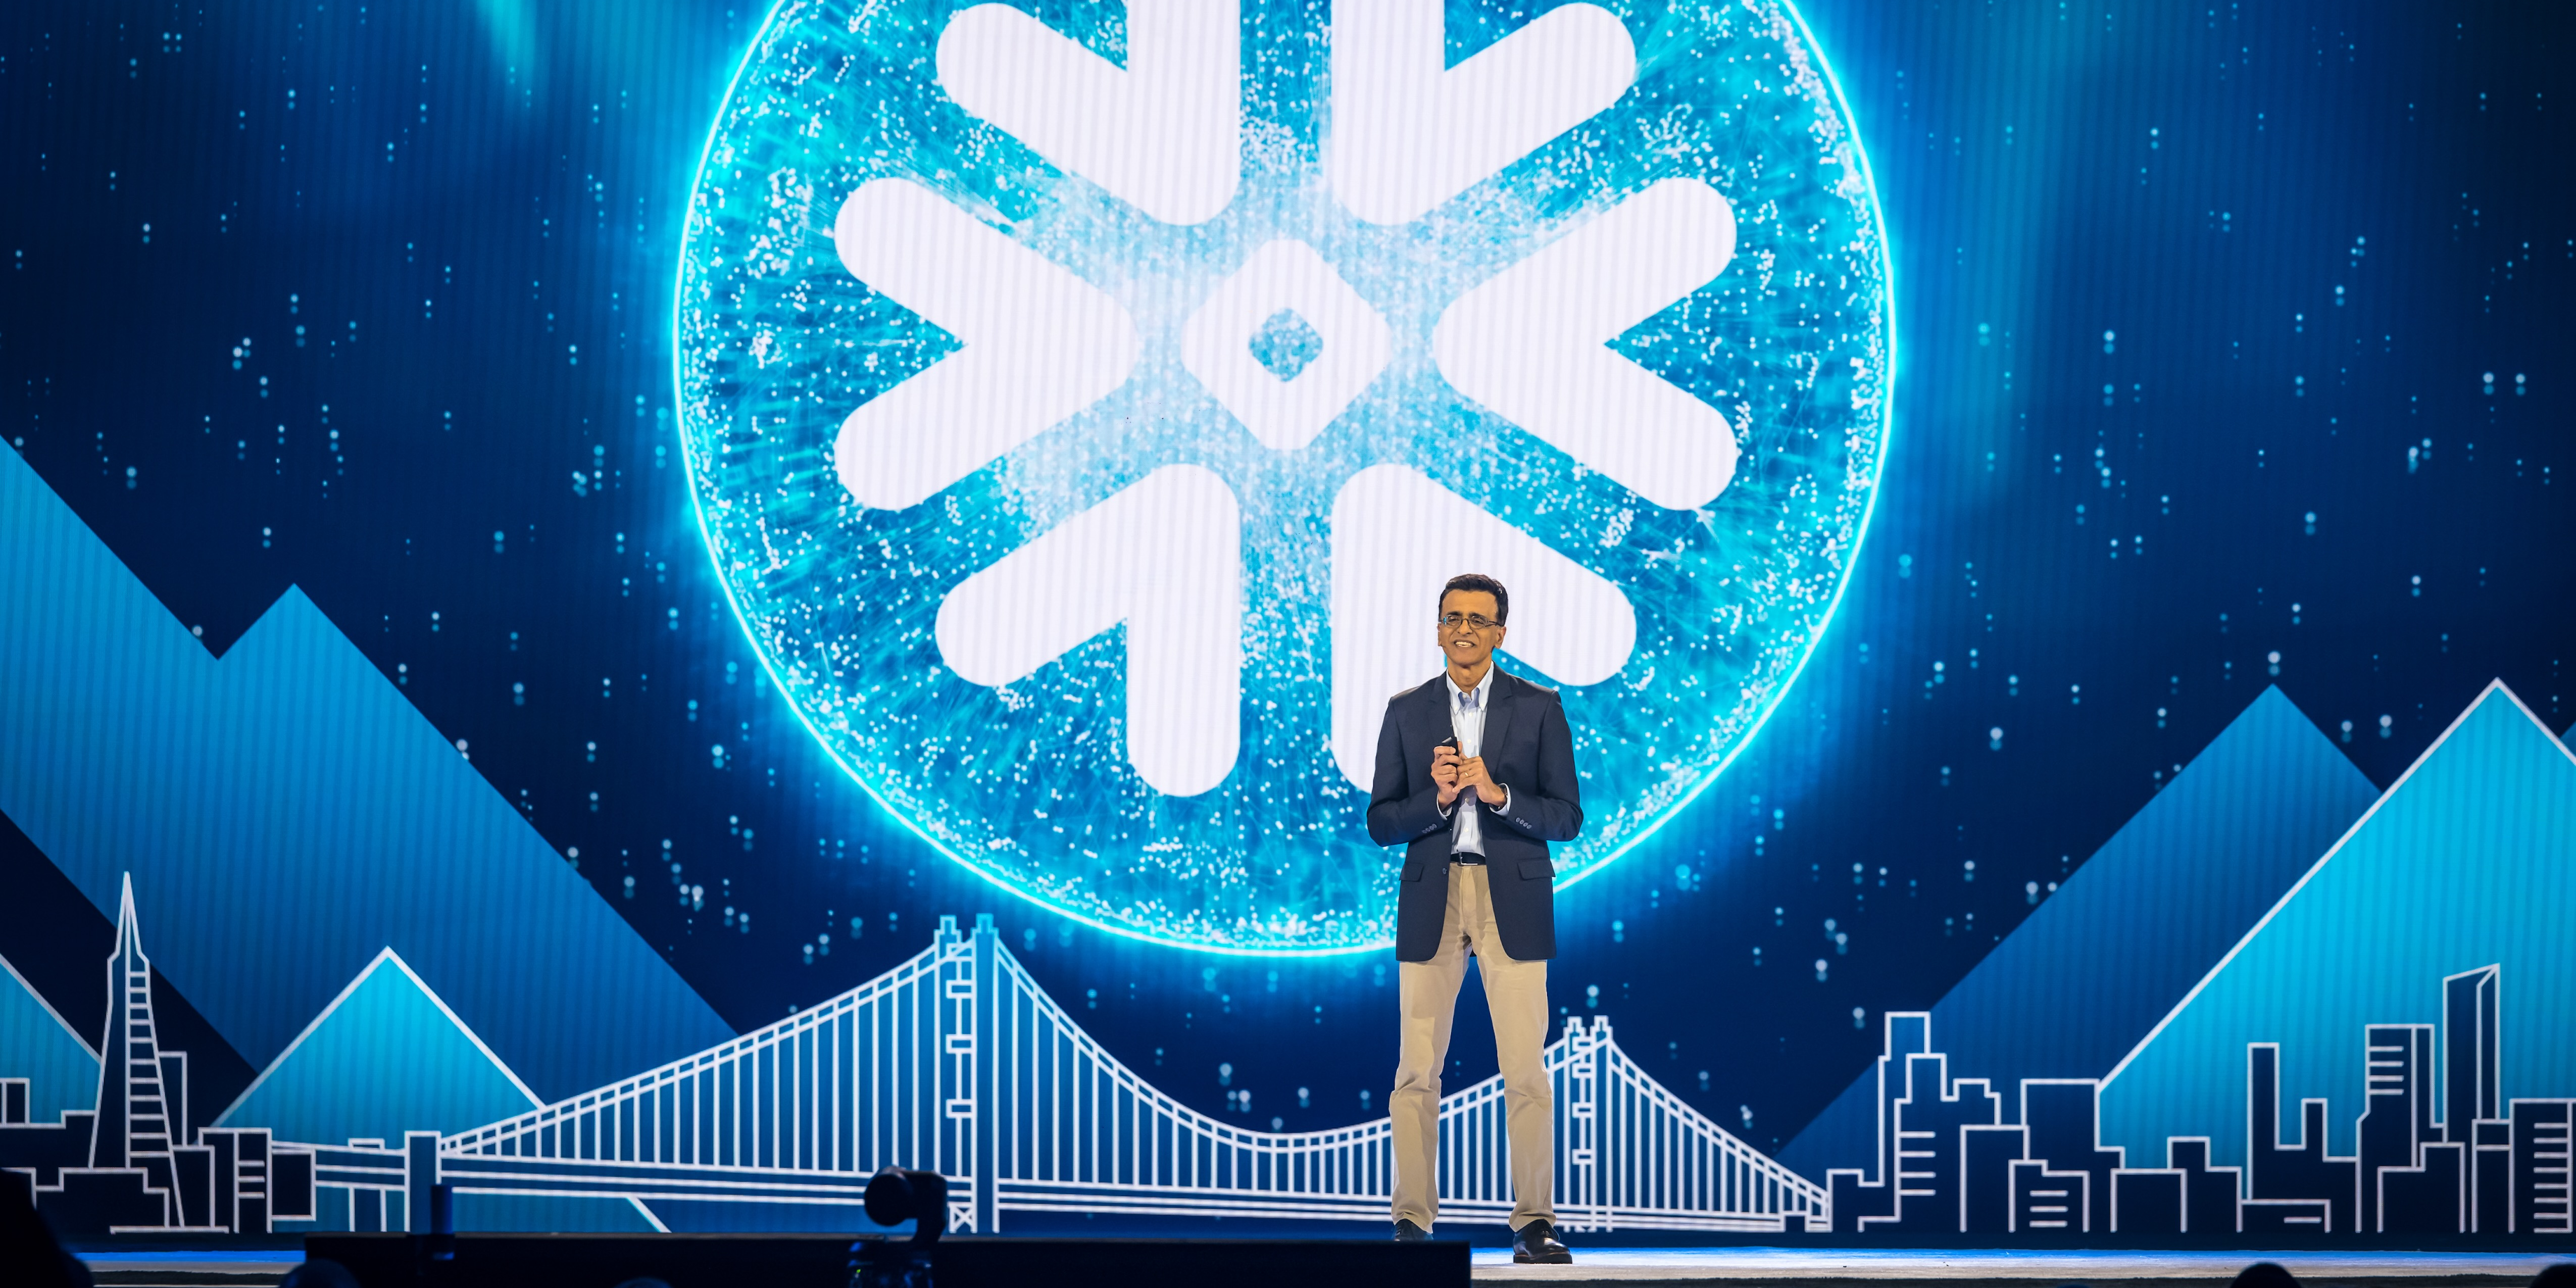 Snowflake veut mettre l'IA générative entre les mains de chaque entreprise